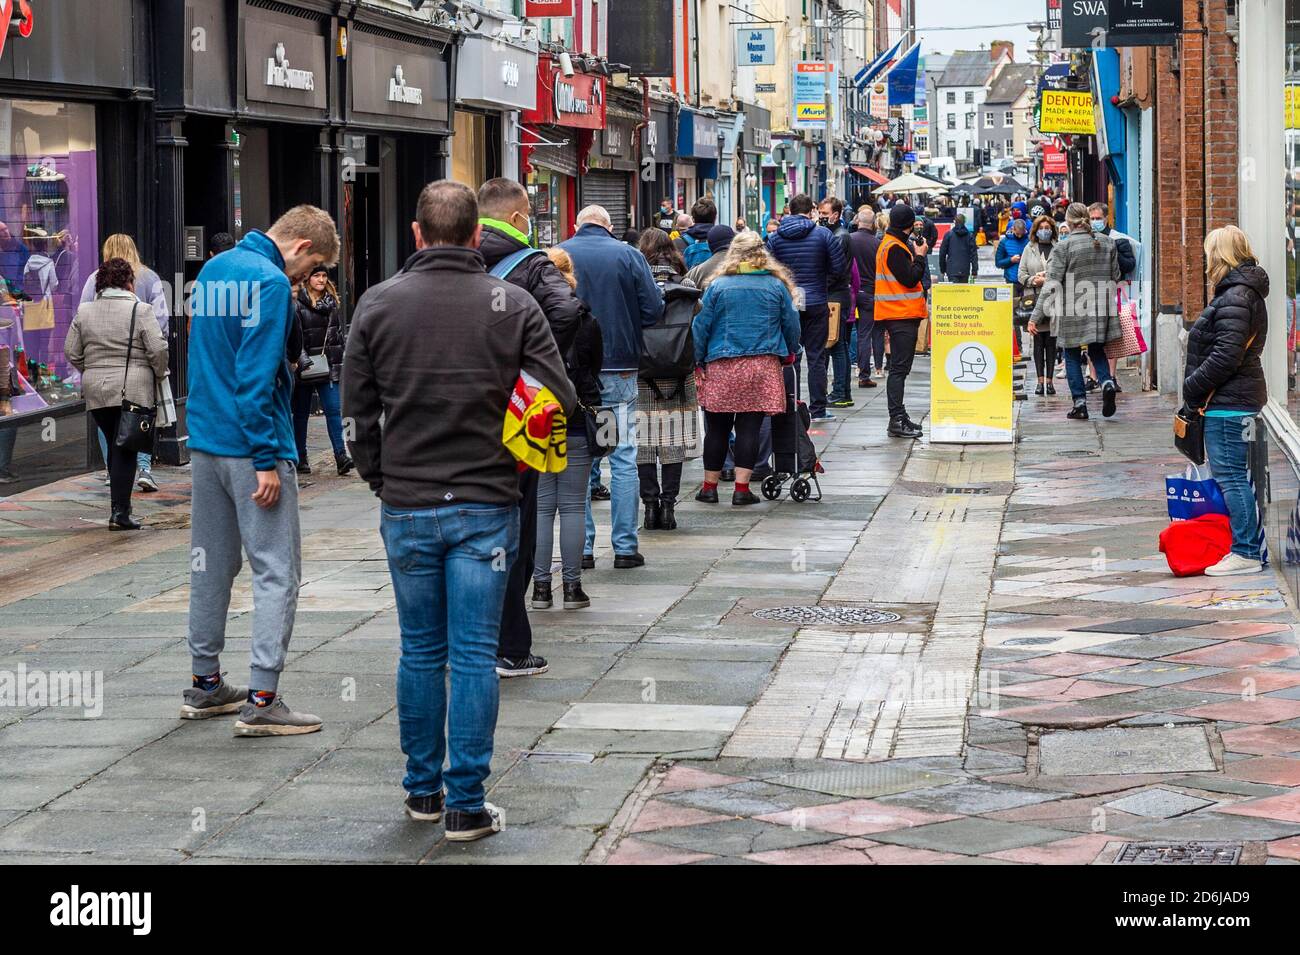 Cork, Irlanda. 17 ottobre 2020. Il centro della città di Cork era molto affollato con gli acquirenti oggi prima di un possibile passaggio al livello 4 o 5 COVID-19 restrizioni, in quanto il governo irlandese sta considerando di andare a un blocco totale. Credit: AG News/Alamy Live News. Foto Stock